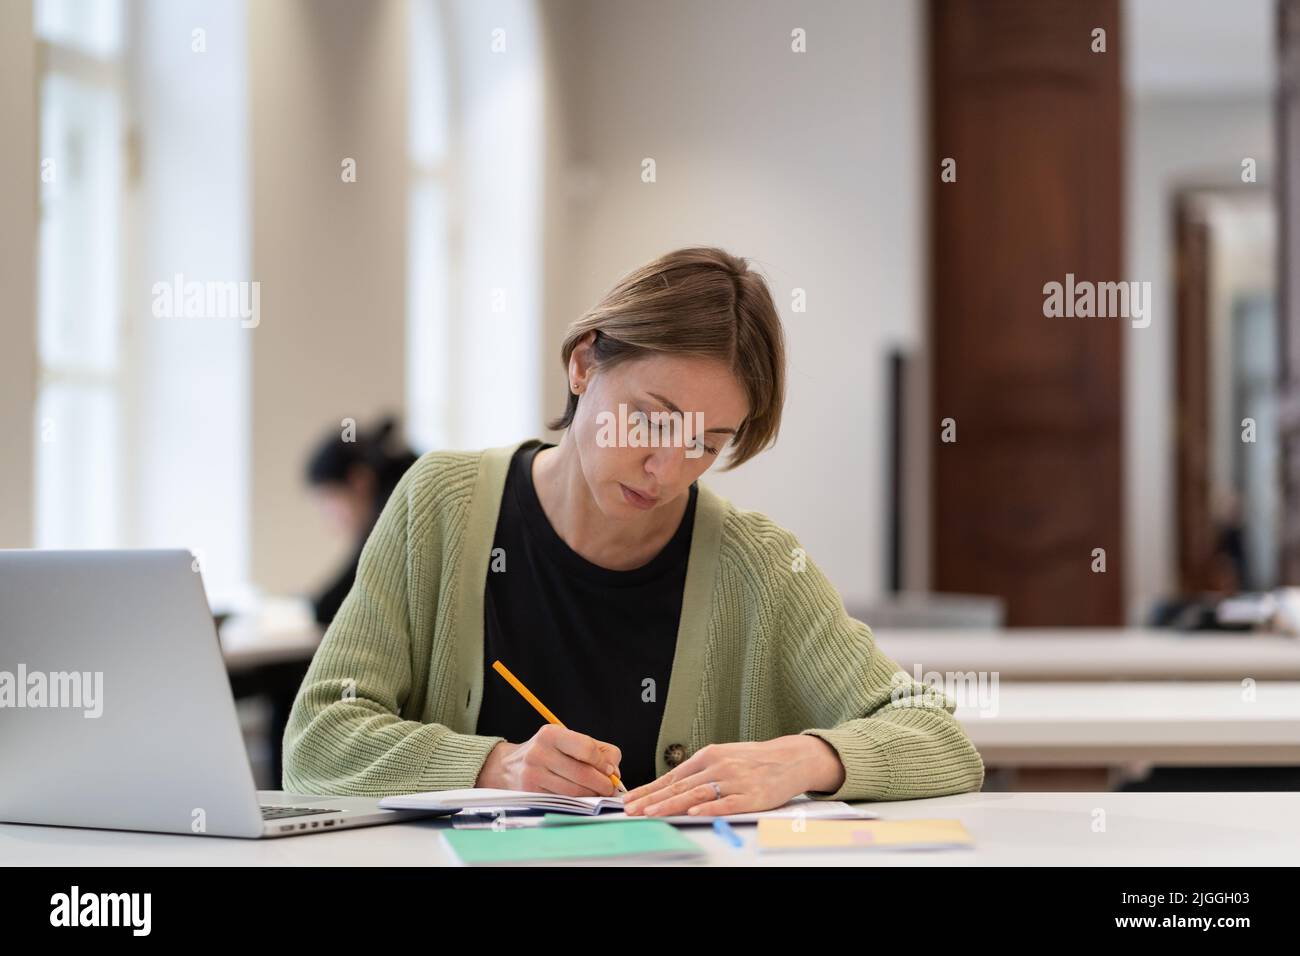 Studentin mittleren Alters, die sich auf die Prüfung in der öffentlichen Bibliothek vorbereitet, während sie mit einem Laptop am Tisch sitzt Stockfoto